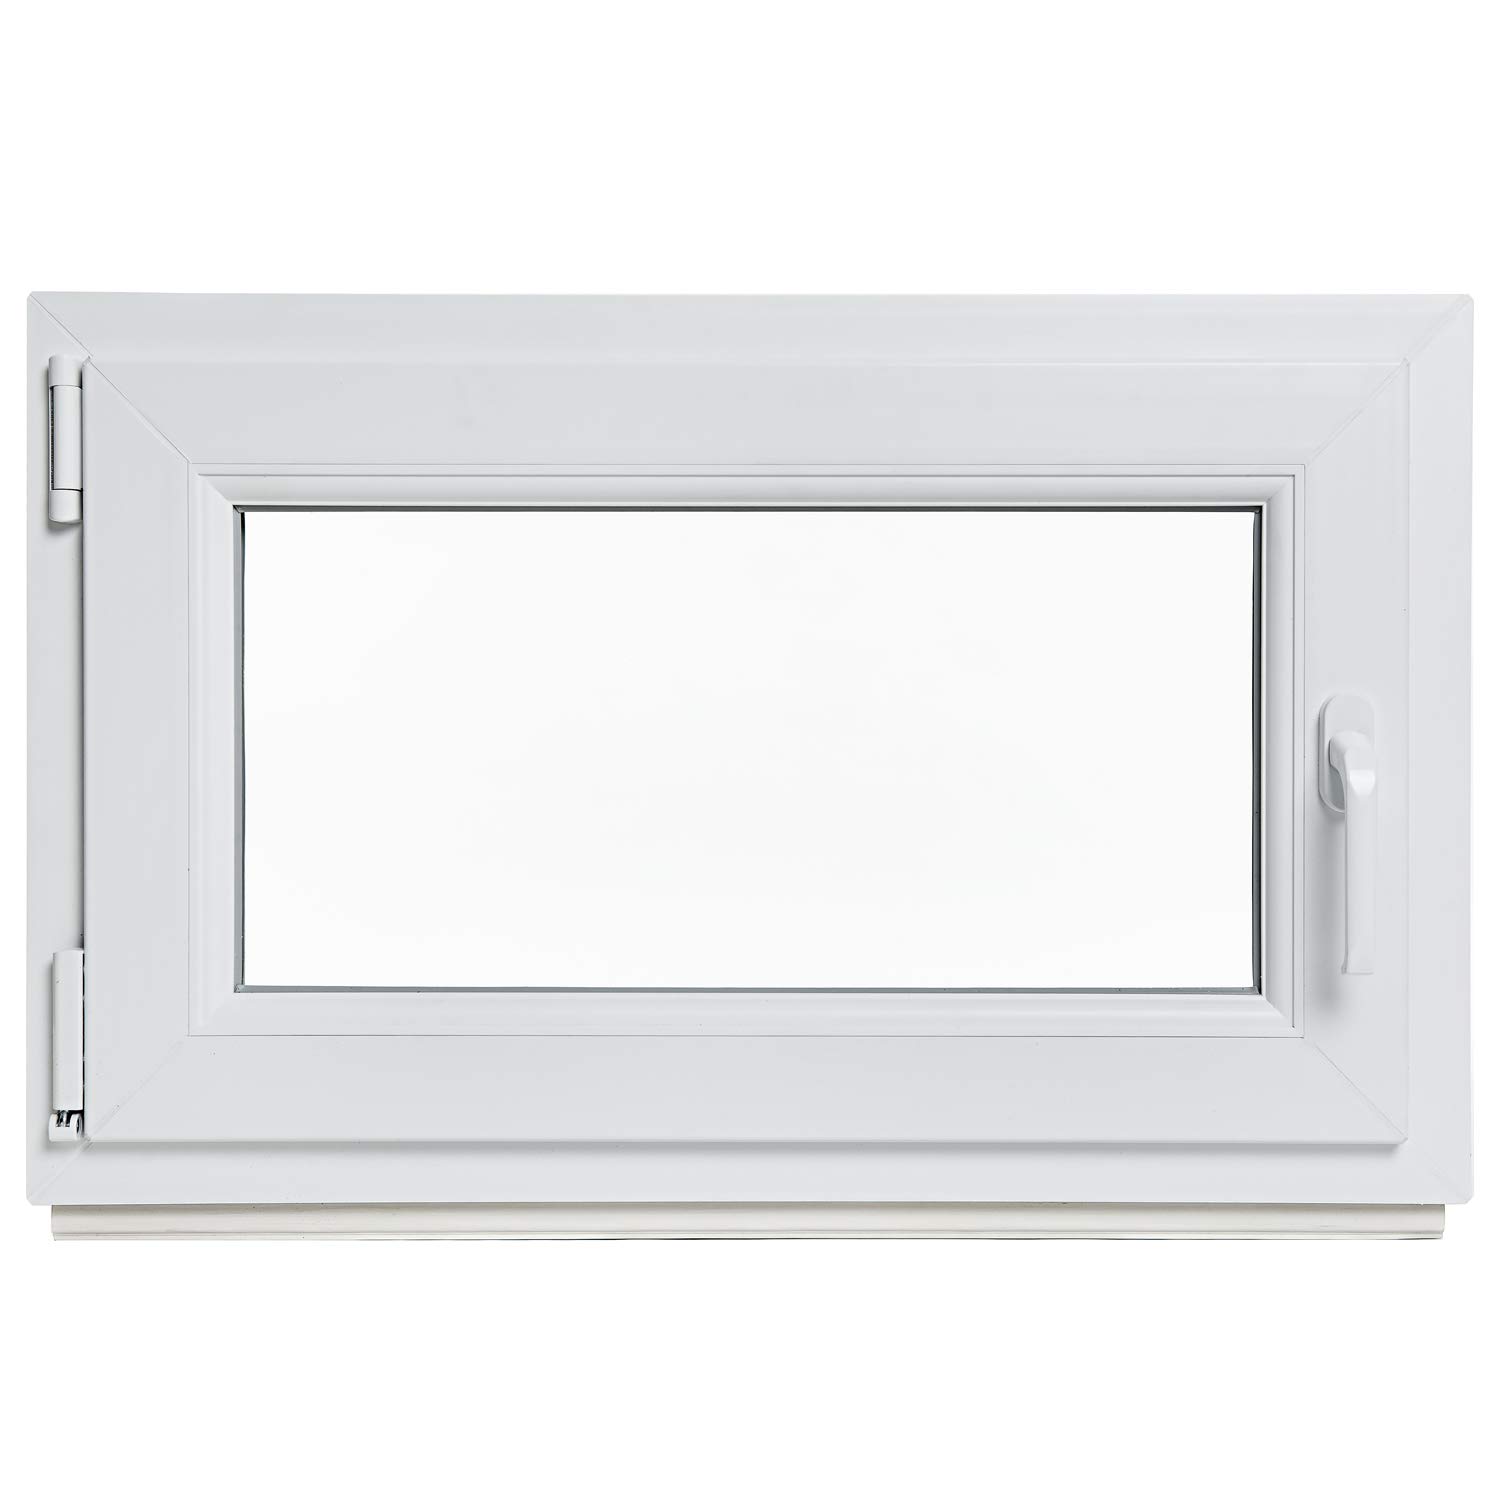 Kellerfenster - Kunststoff - Fenster - weiß - BxH: 65 x 45 cm - DIN links - 3-fach-Verglasung - Lagerware